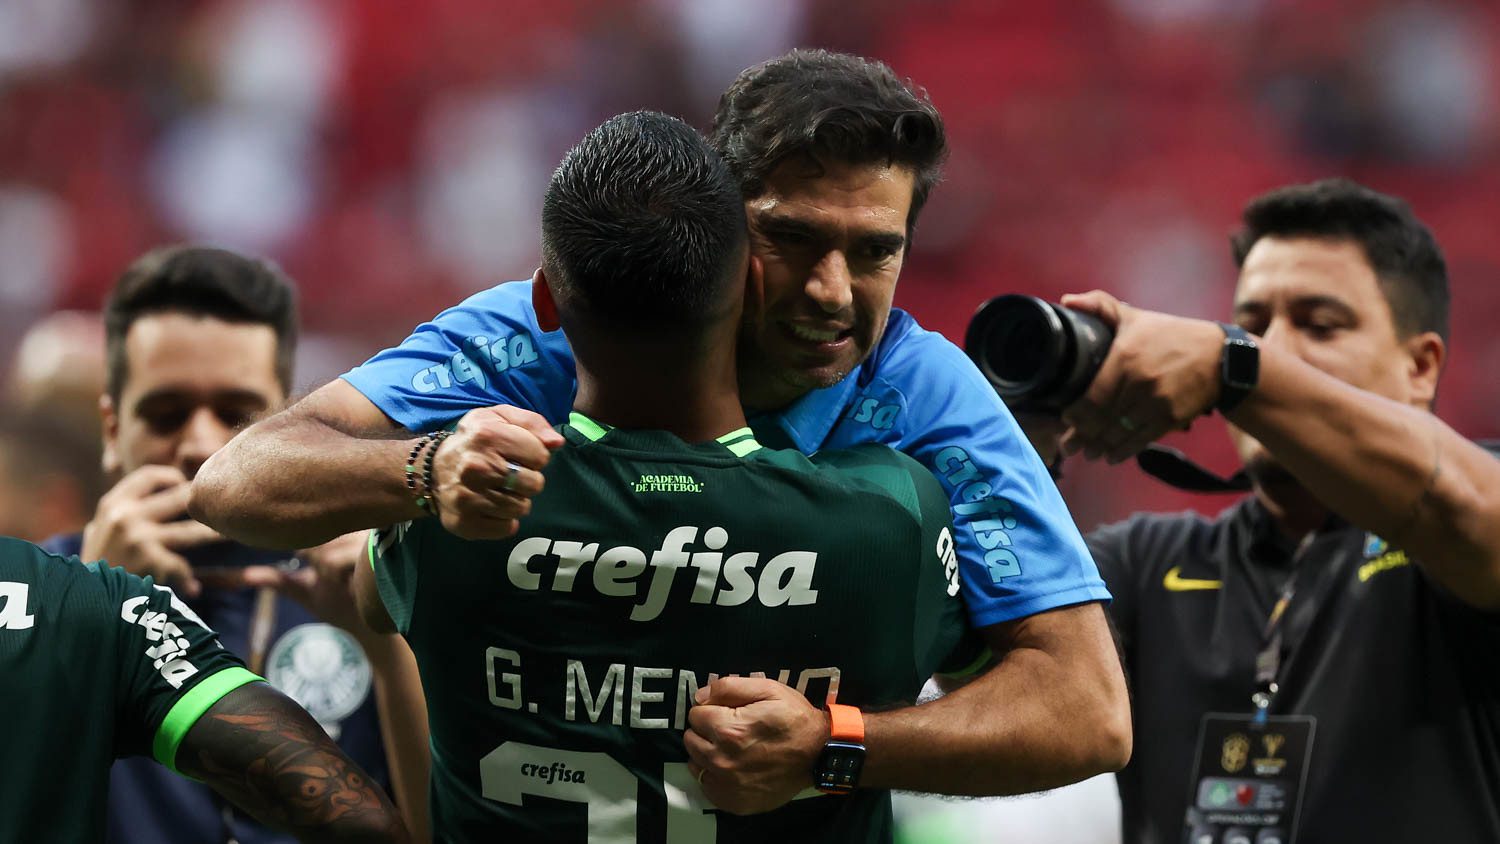 Real Madrid pode comprar mais dois jogadores do Palmeiras